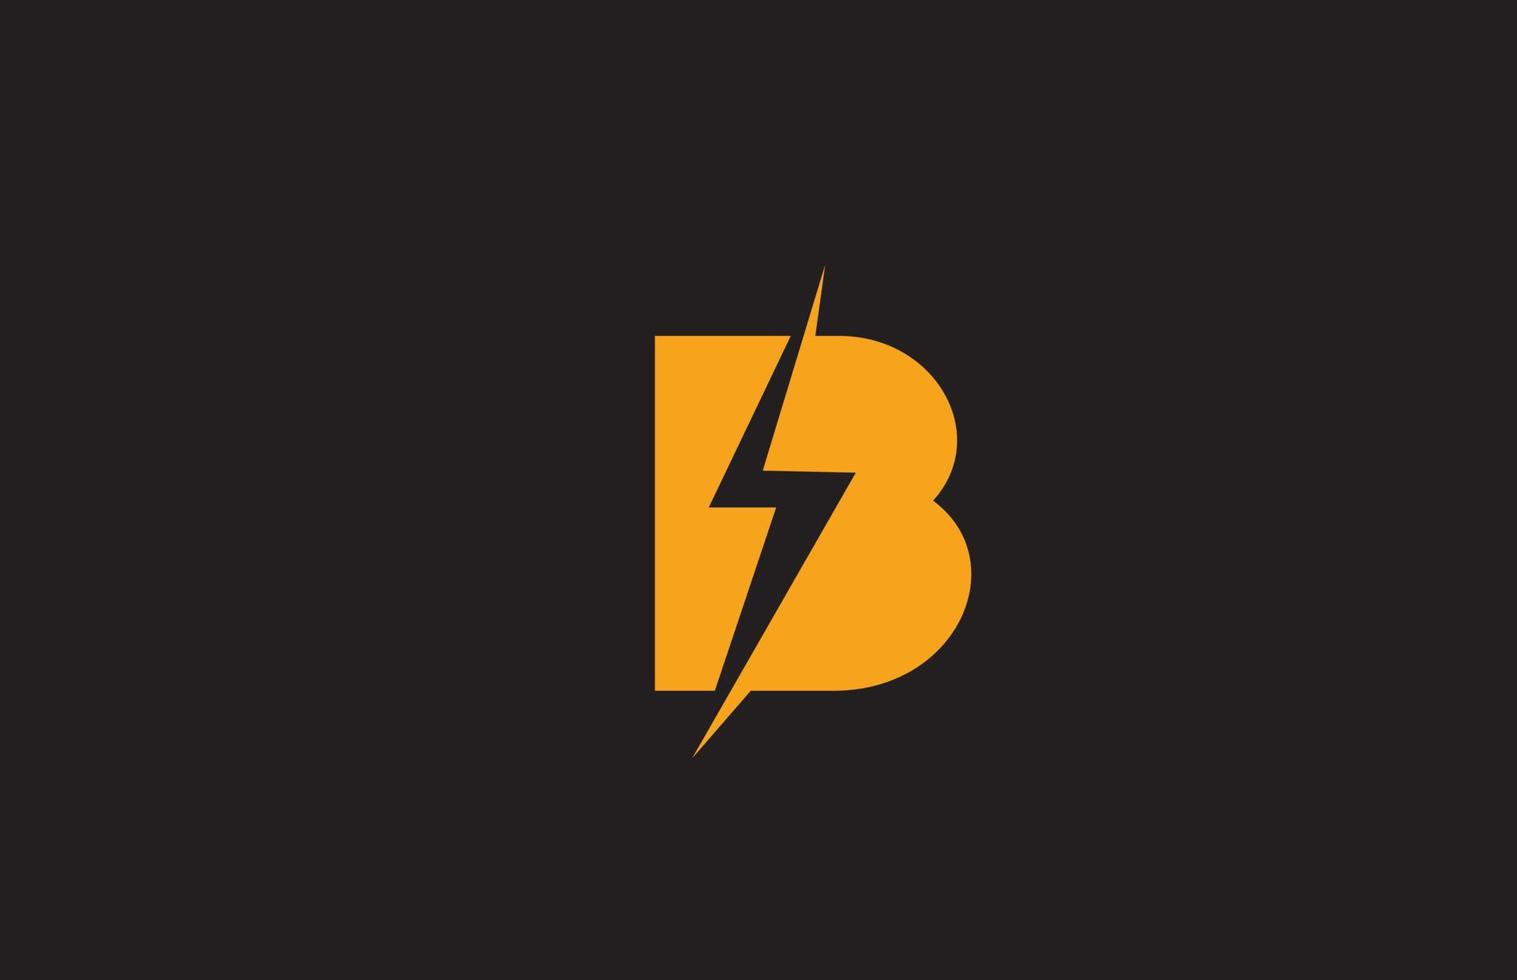 b geel zwart alfabet letterpictogram logo. elektrisch bliksemontwerp voor stroom- of energiebedrijven vector